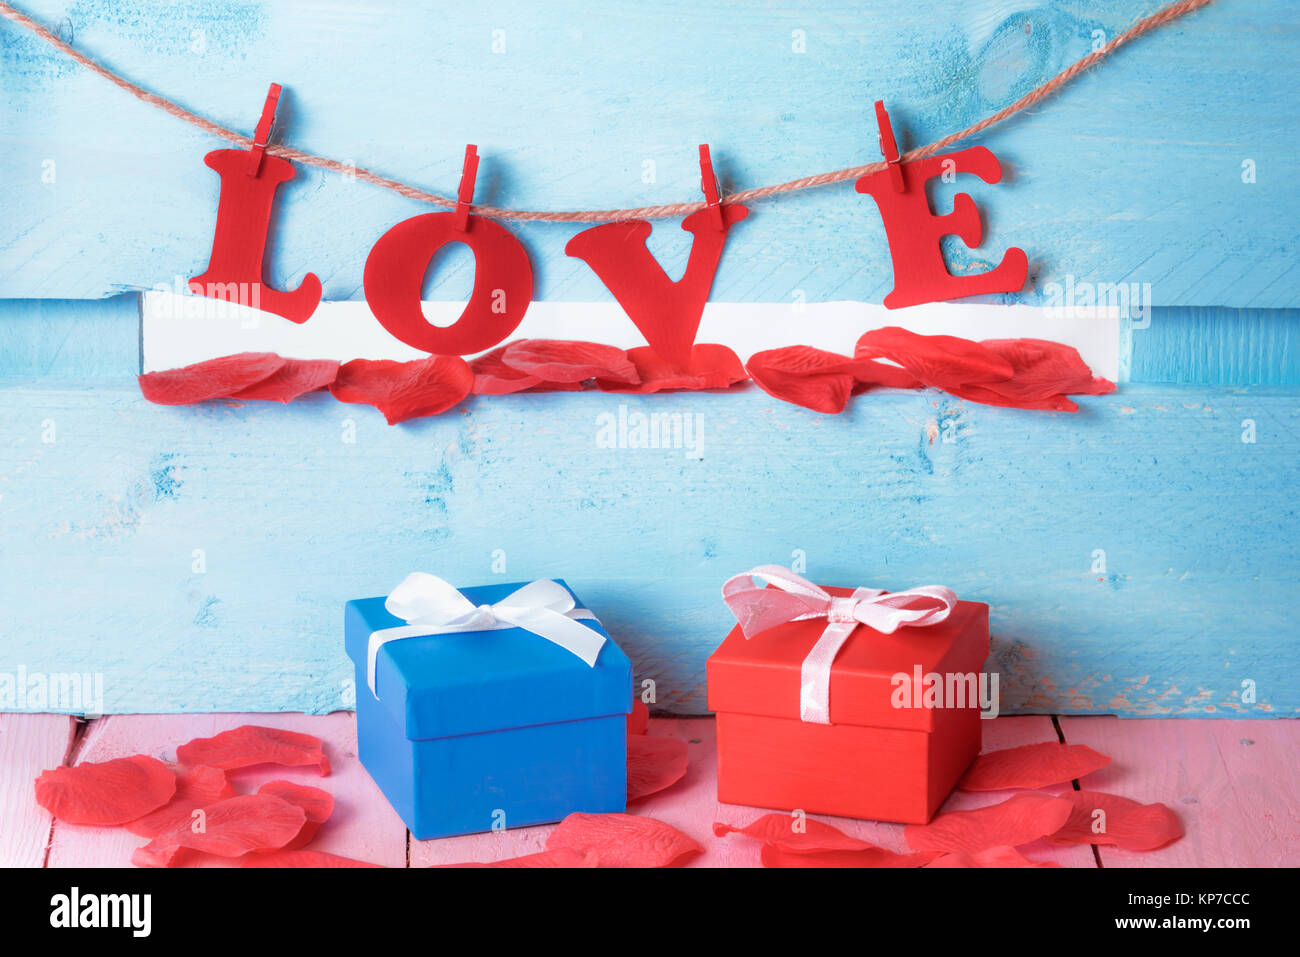 Di lui e di lei confezioni regalo circondato da sapone petali di colore rosso e la parola amore scritto con carta rossa lettere legata a una stringa su un blu staccionata in legno. Foto Stock